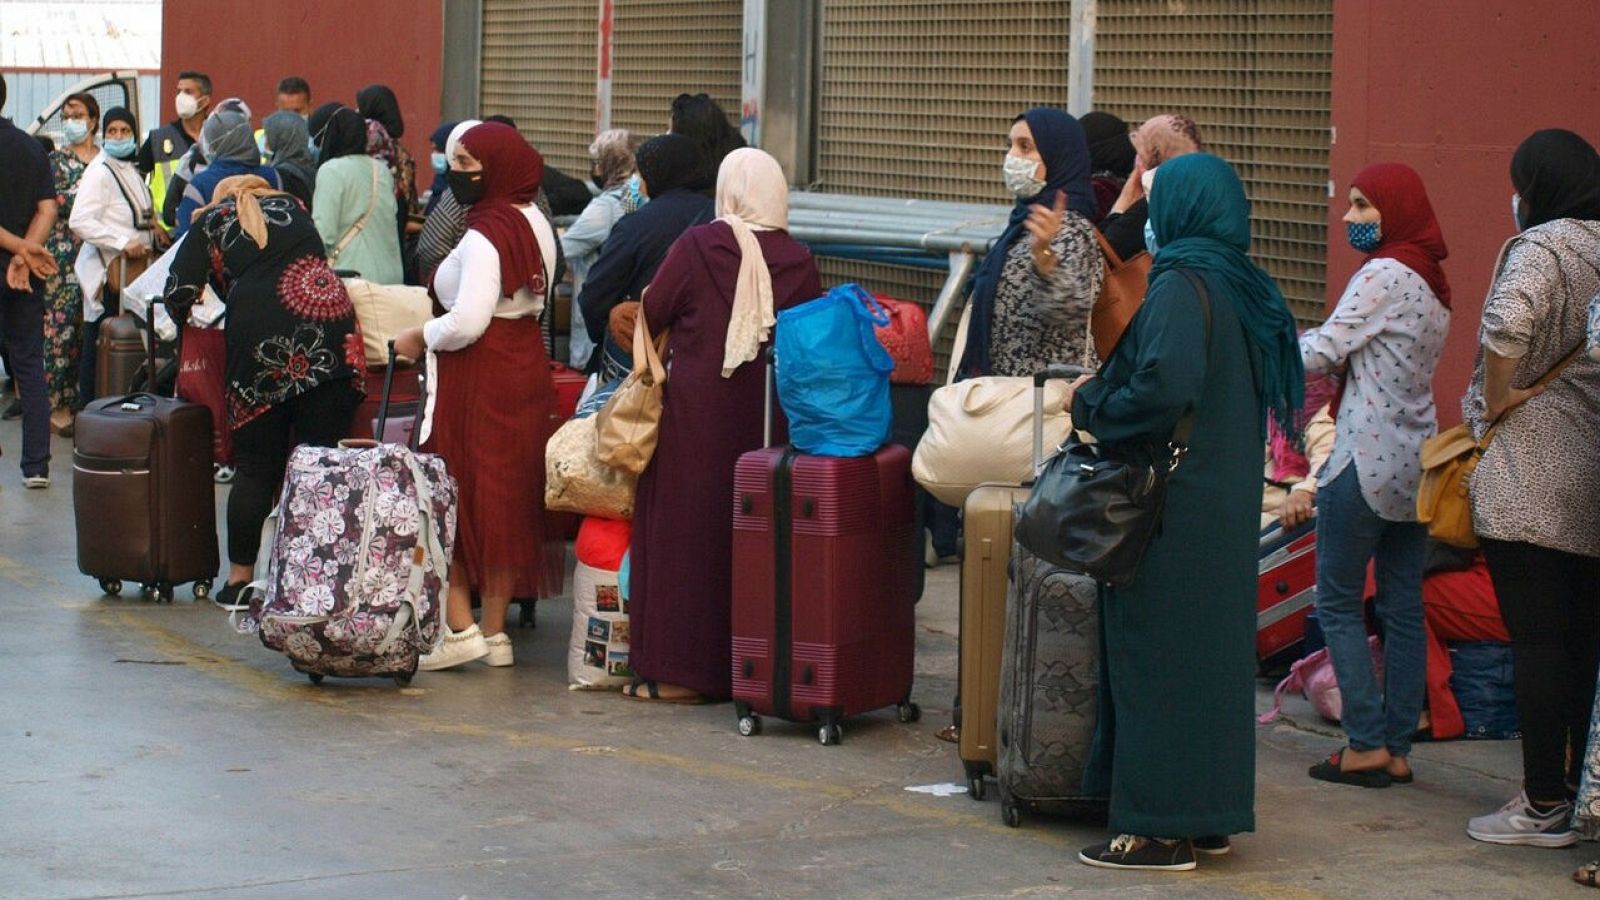 Marruecos permite la repatriación de ciudadanos atrapados en Ceuta y Melilla desde el inicio de la pandemia - RTVE.es 